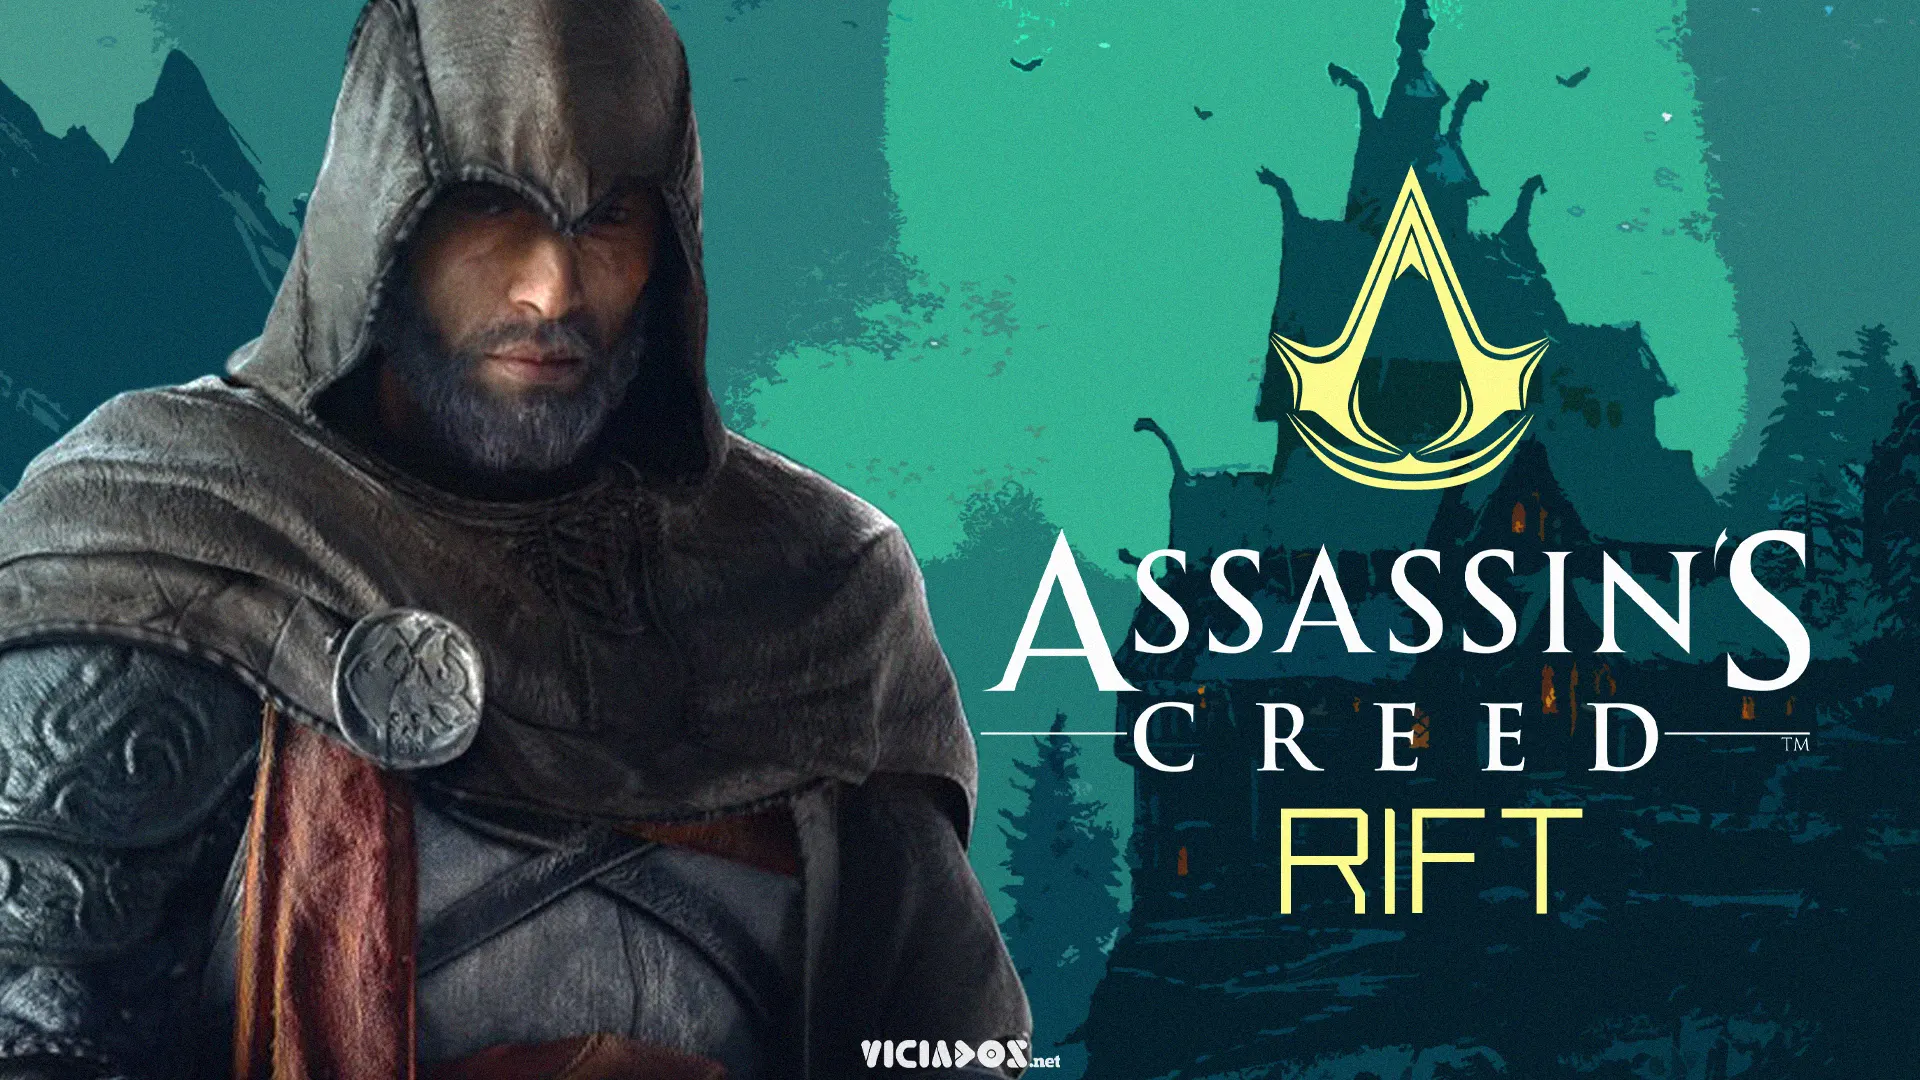 Assassin's Creed | Jason Schreier revela mais detalhes sobre o novo título 2023 Viciados